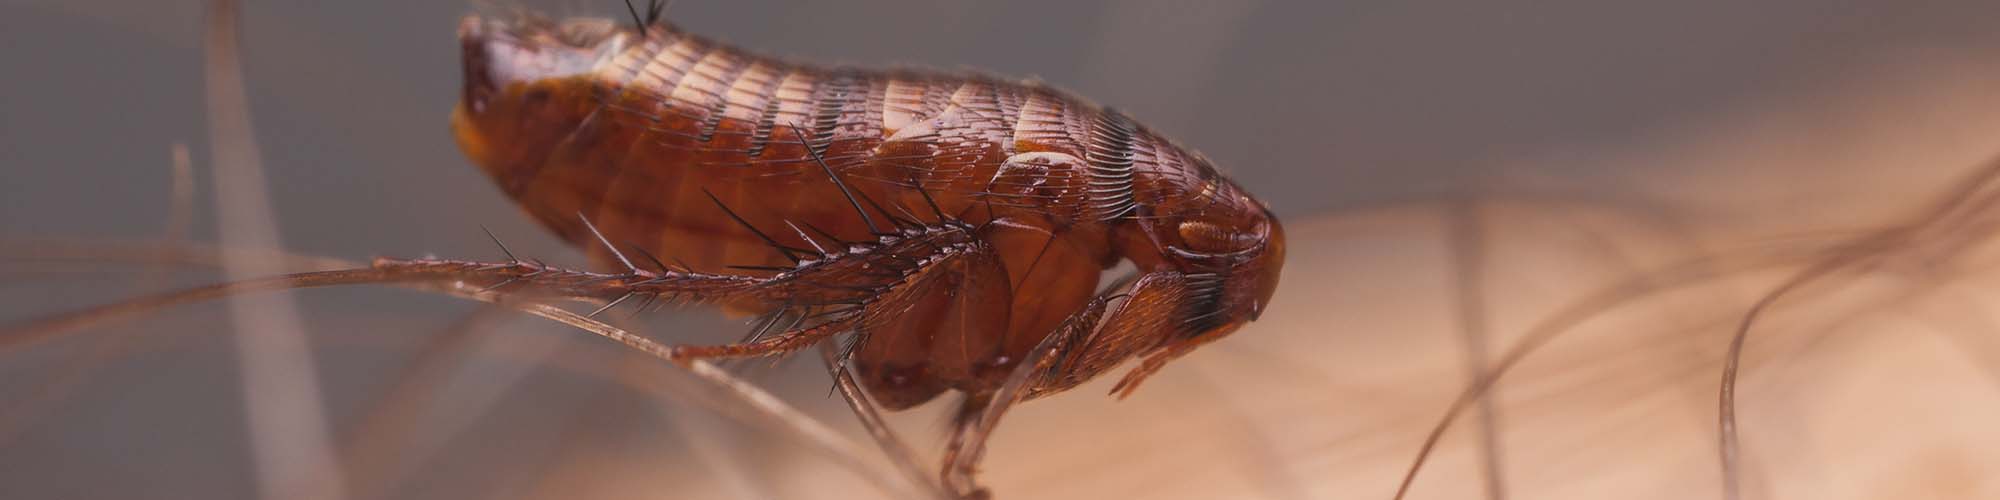 Close up of a Flea